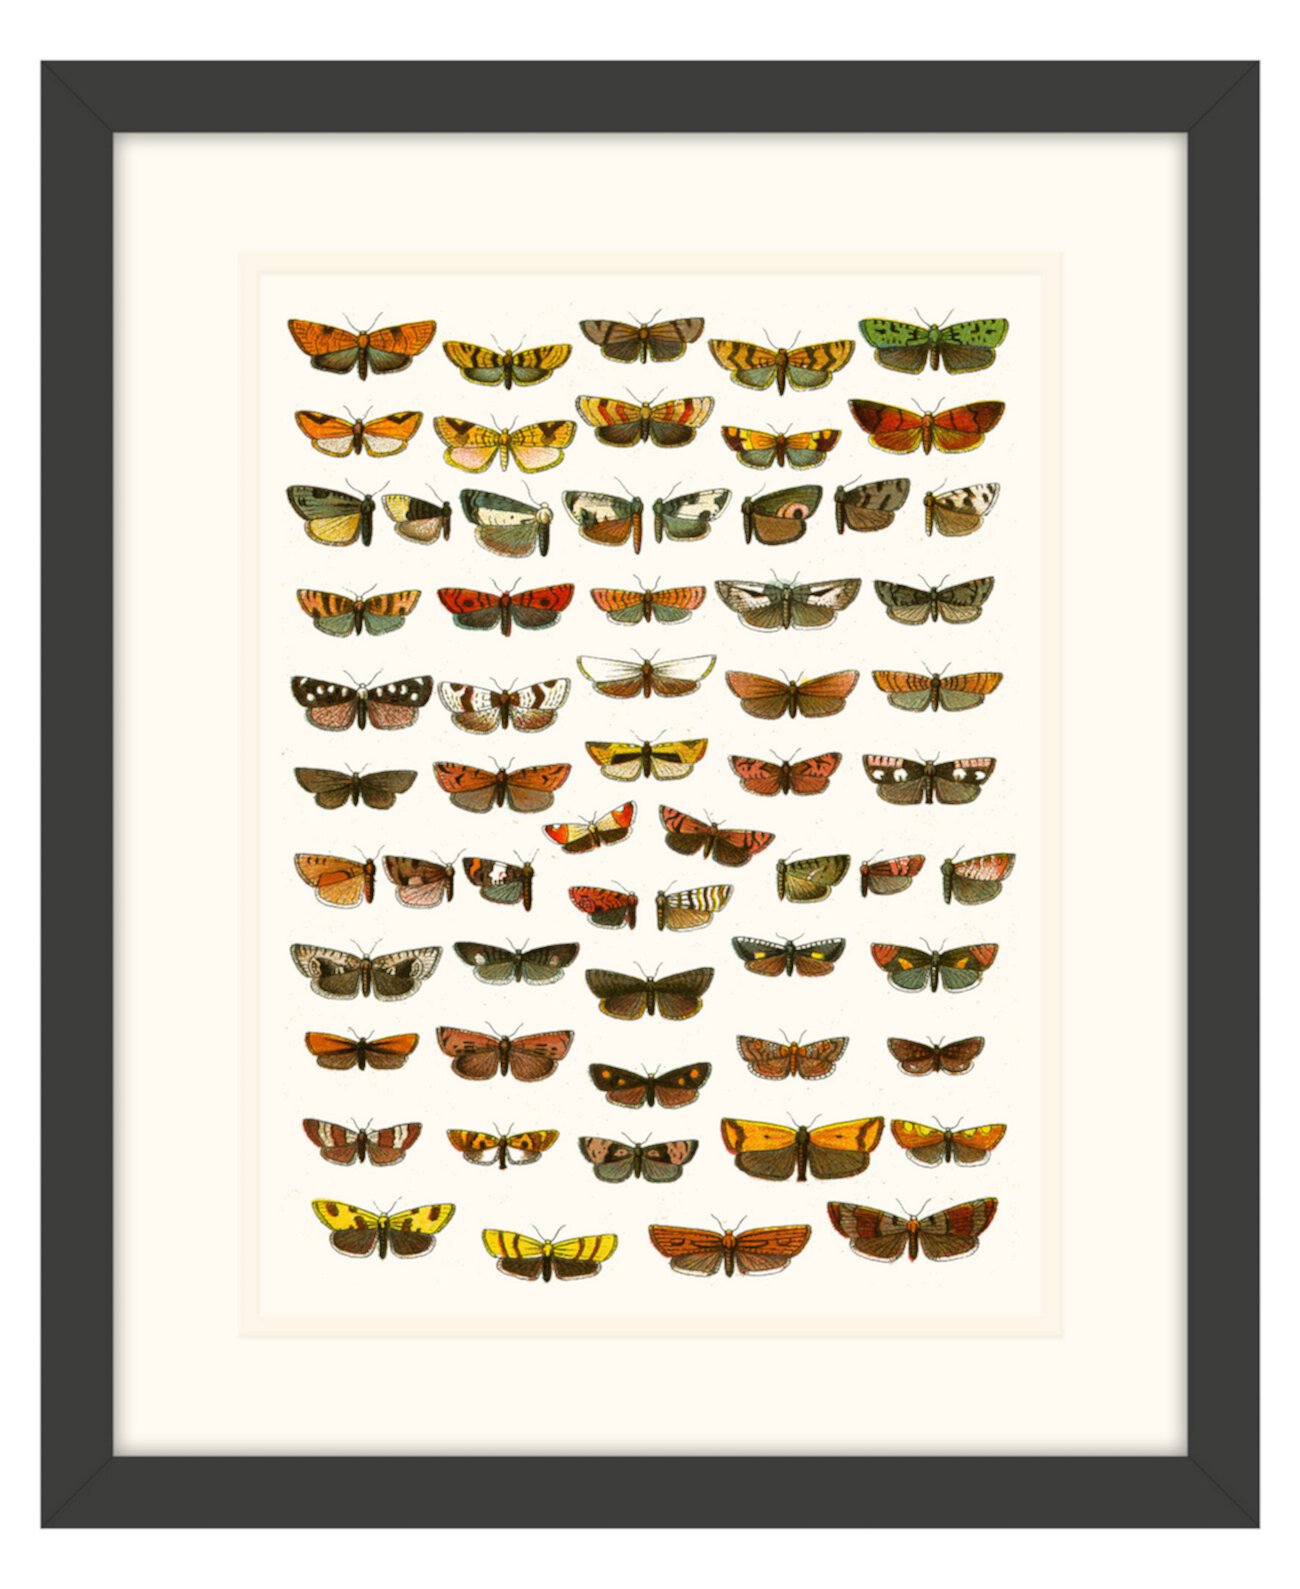 Картины с бабочками, которые я оформила в рамке из жикле, - 15 "x 18" x 2 " Melissa Van Hise